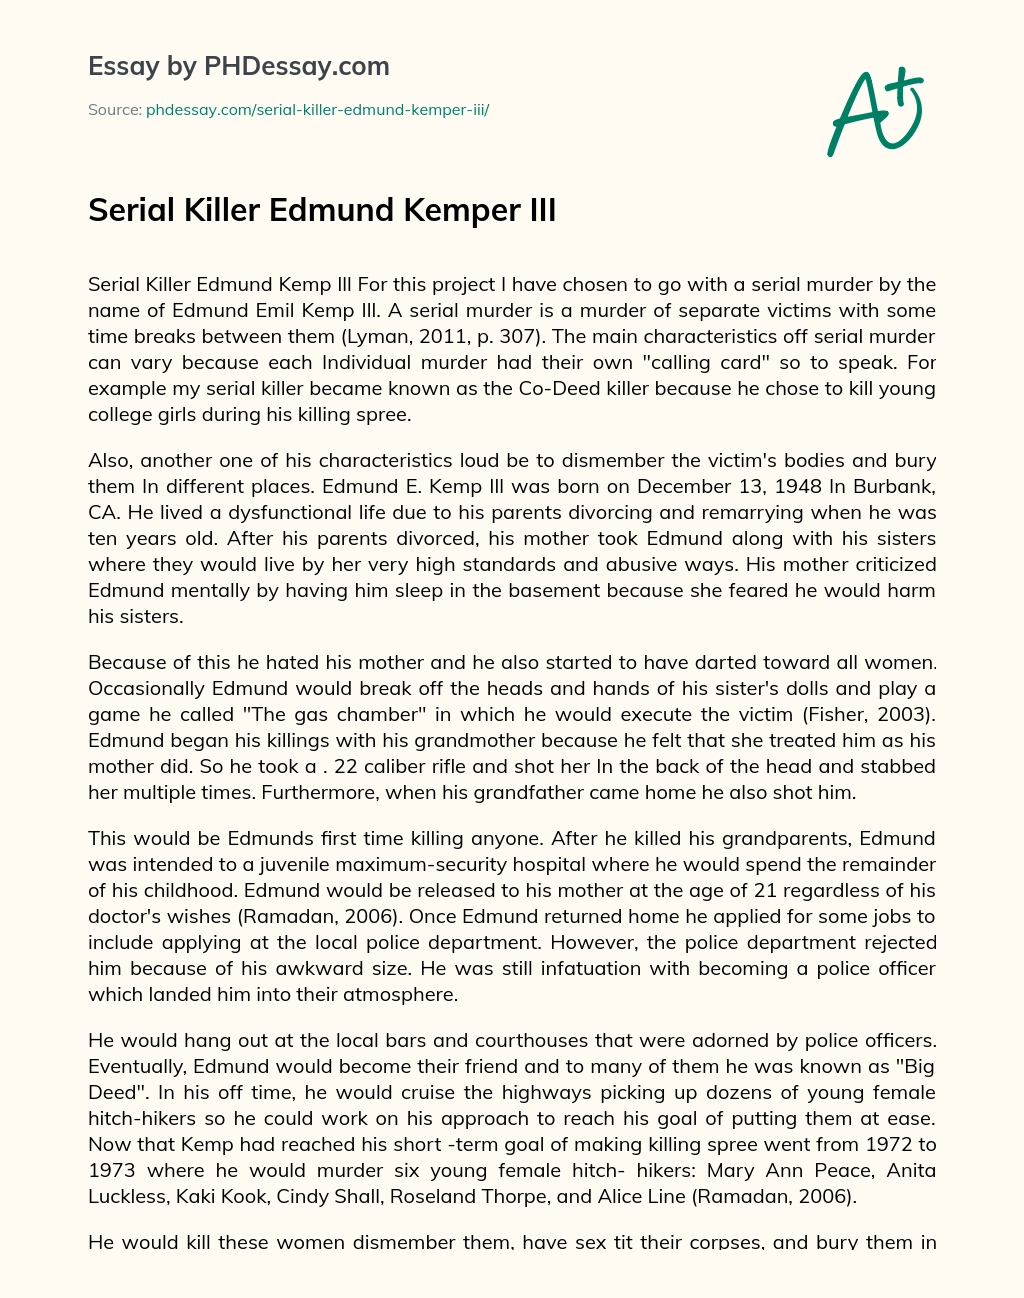 Serial Killer Edmund Kemper III essay